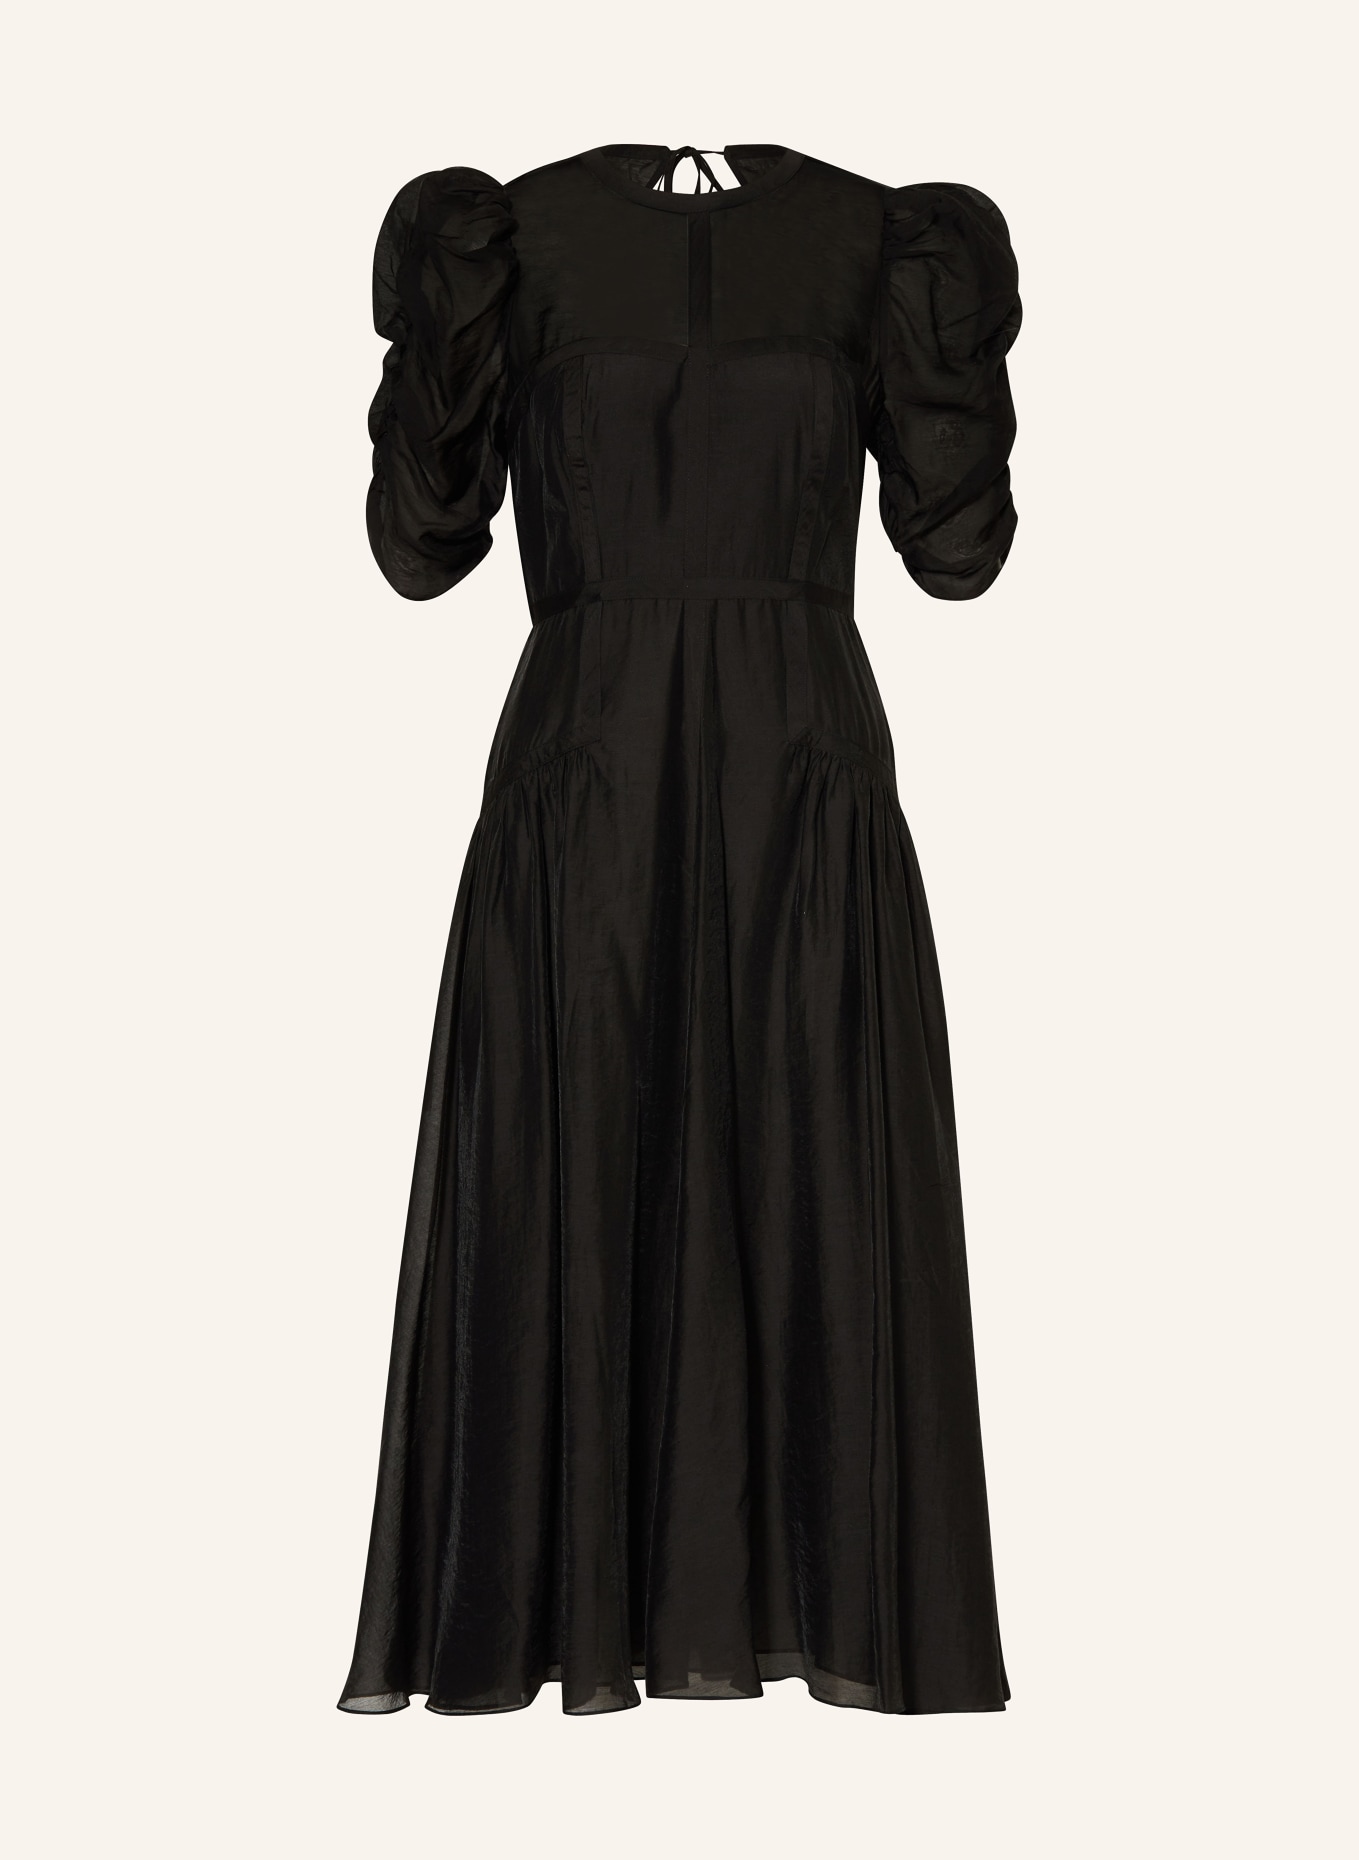 TED BAKER Kleid TATSU mit Cut-out, Farbe: SCHWARZ (Bild 1)